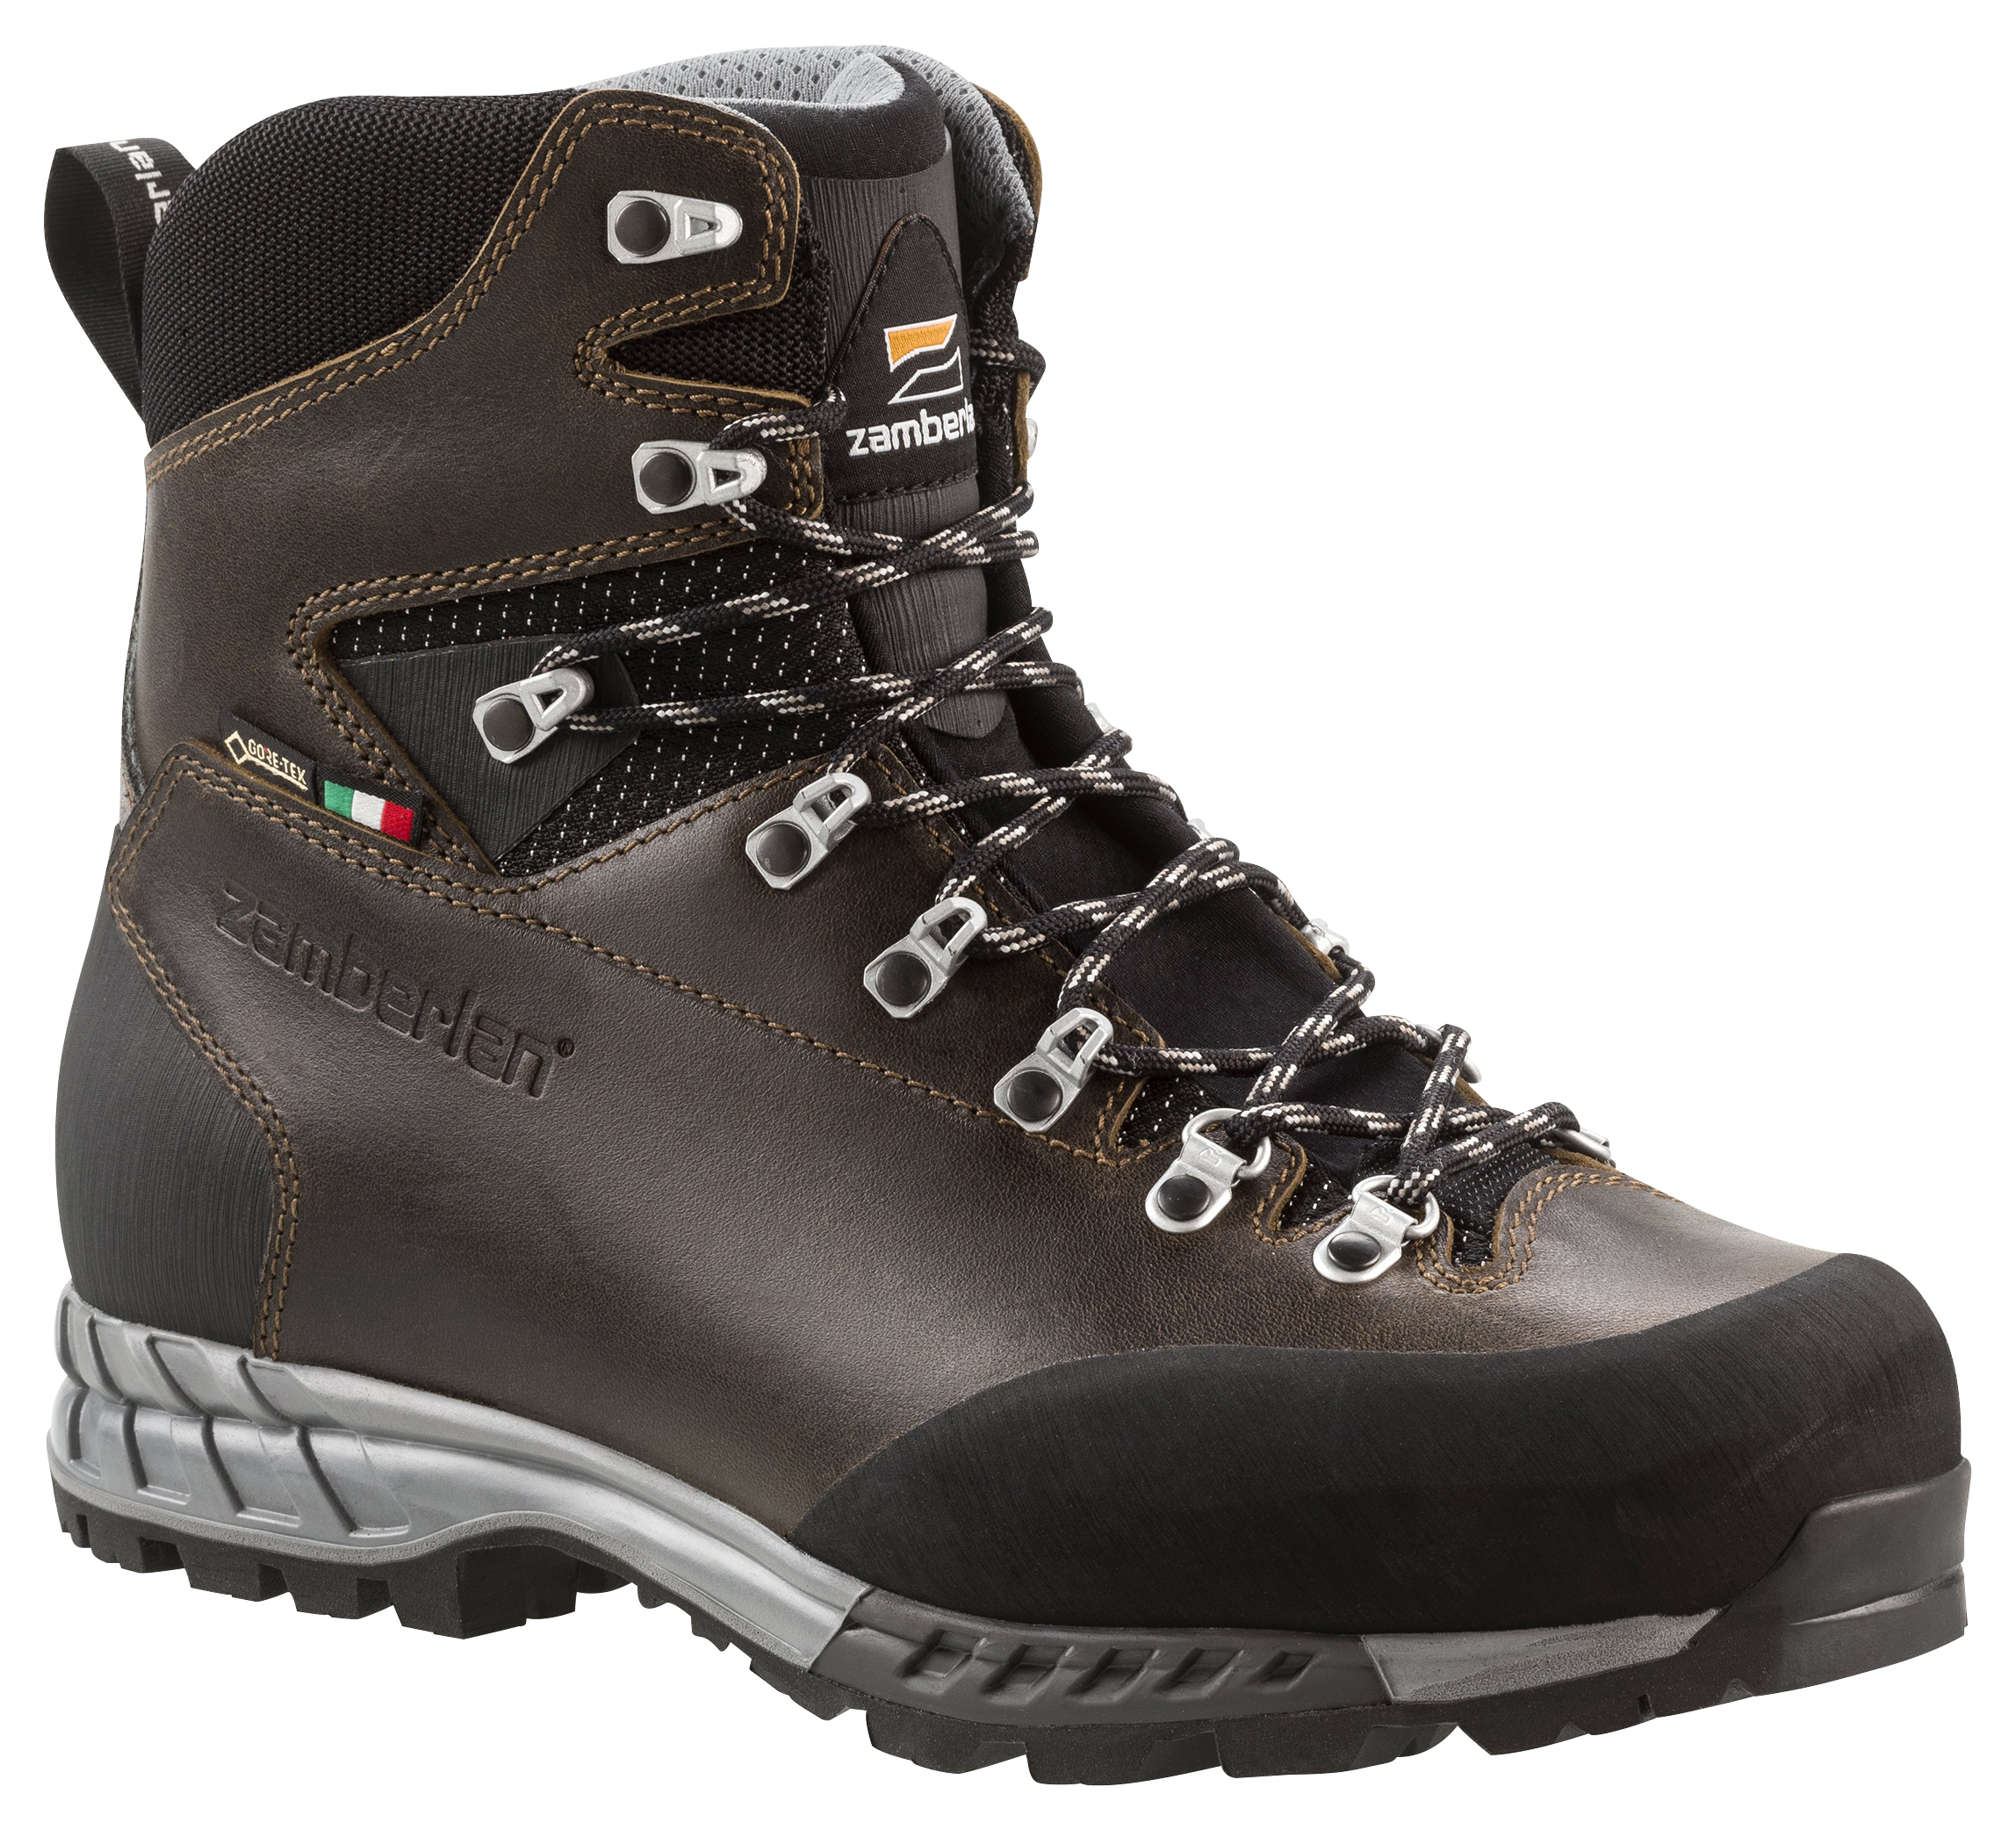 Zamberlan 1111 Cresta GTX RR Waterproof Hiking Boots for Men